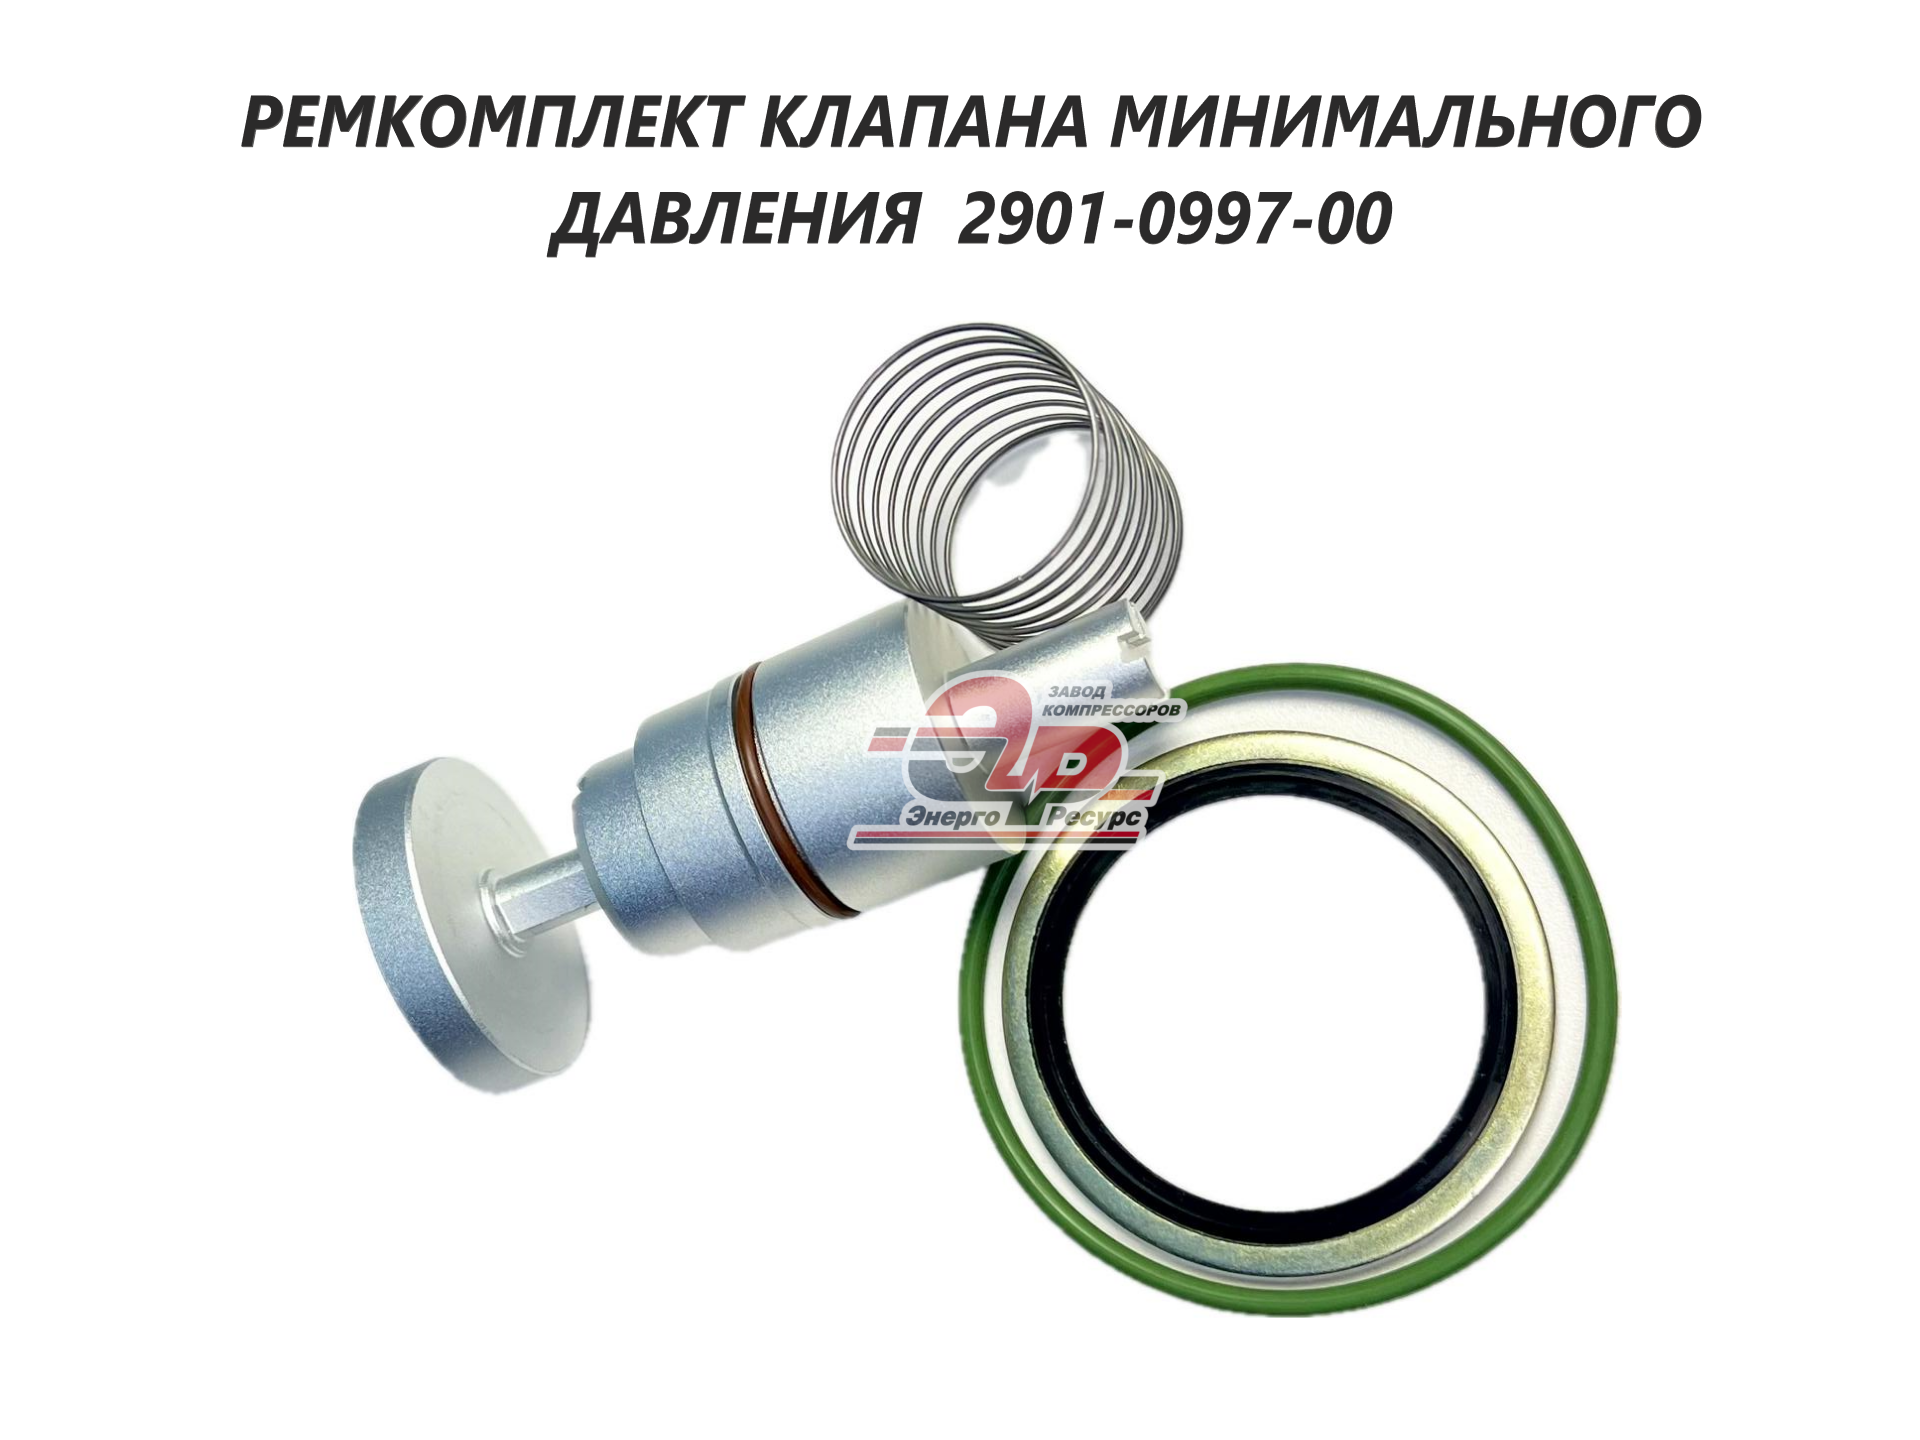 Ремкомплект клапана минимального давления 2901 0997 00 для винтового компрессора Atlac Copco, Ceccato.